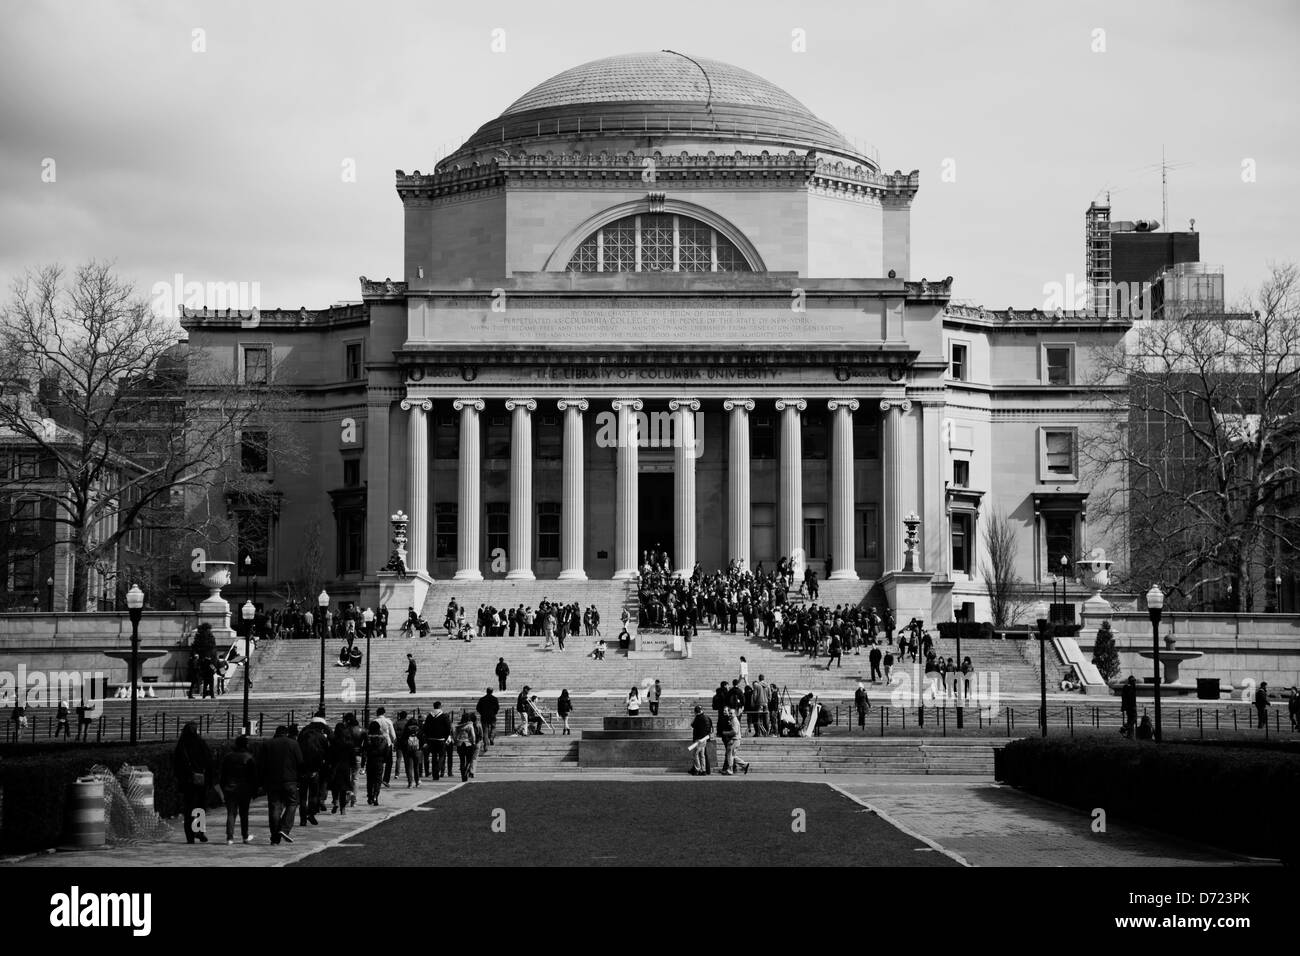 La bibliothèque de l'université de Columbia, New York City (usage éditorial uniquement) Banque D'Images